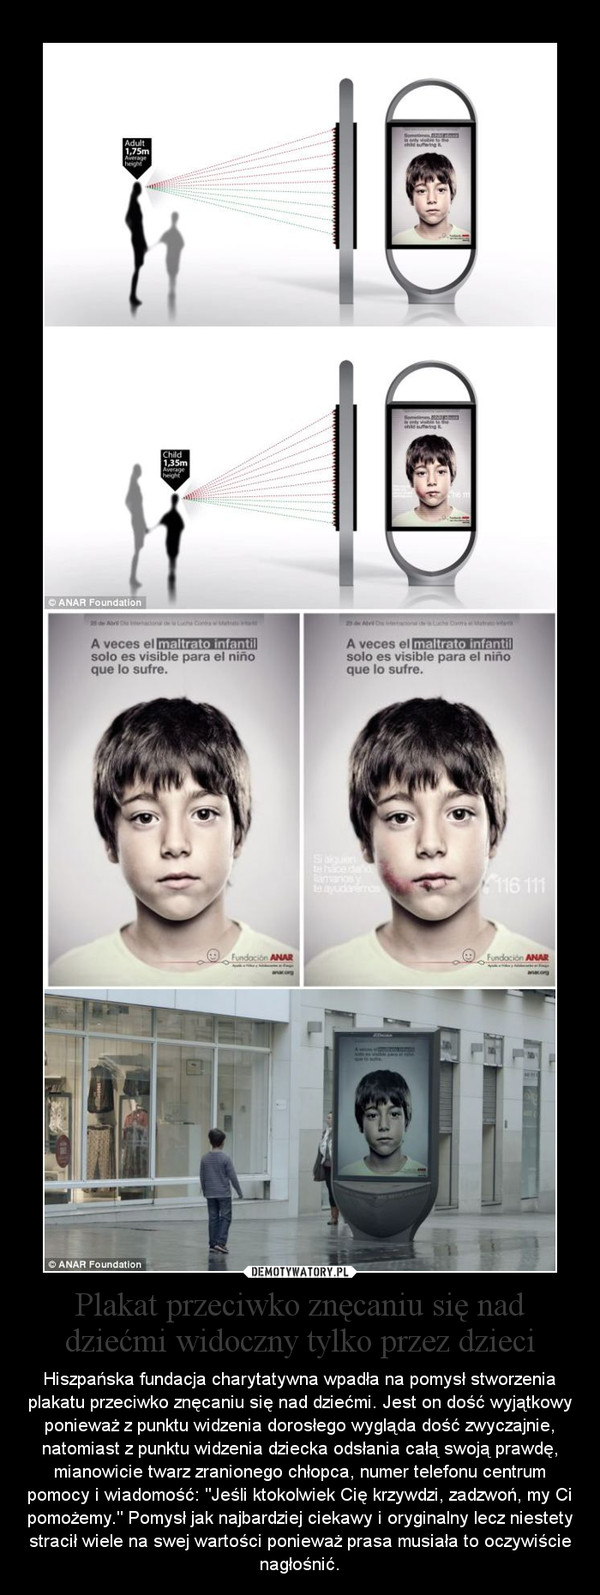 Plakat przeciwko znęcaniu się nad dziećmi widoczny tylko przez dzieci – Hiszpańska fundacja charytatywna wpadła na pomysł stworzenia plakatu przeciwko znęcaniu się nad dziećmi. Jest on dość wyjątkowy ponieważ z punktu widzenia dorosłego wygląda dość zwyczajnie, natomiast z punktu widzenia dziecka odsłania całą swoją prawdę, mianowicie twarz zranionego chłopca, numer telefonu centrum pomocy i wiadomość: "Jeśli ktokolwiek Cię krzywdzi, zadzwoń, my Ci pomożemy." Pomysł jak najbardziej ciekawy i oryginalny lecz niestety stracił wiele na swej wartości ponieważ prasa musiała to oczywiście nagłośnić. 